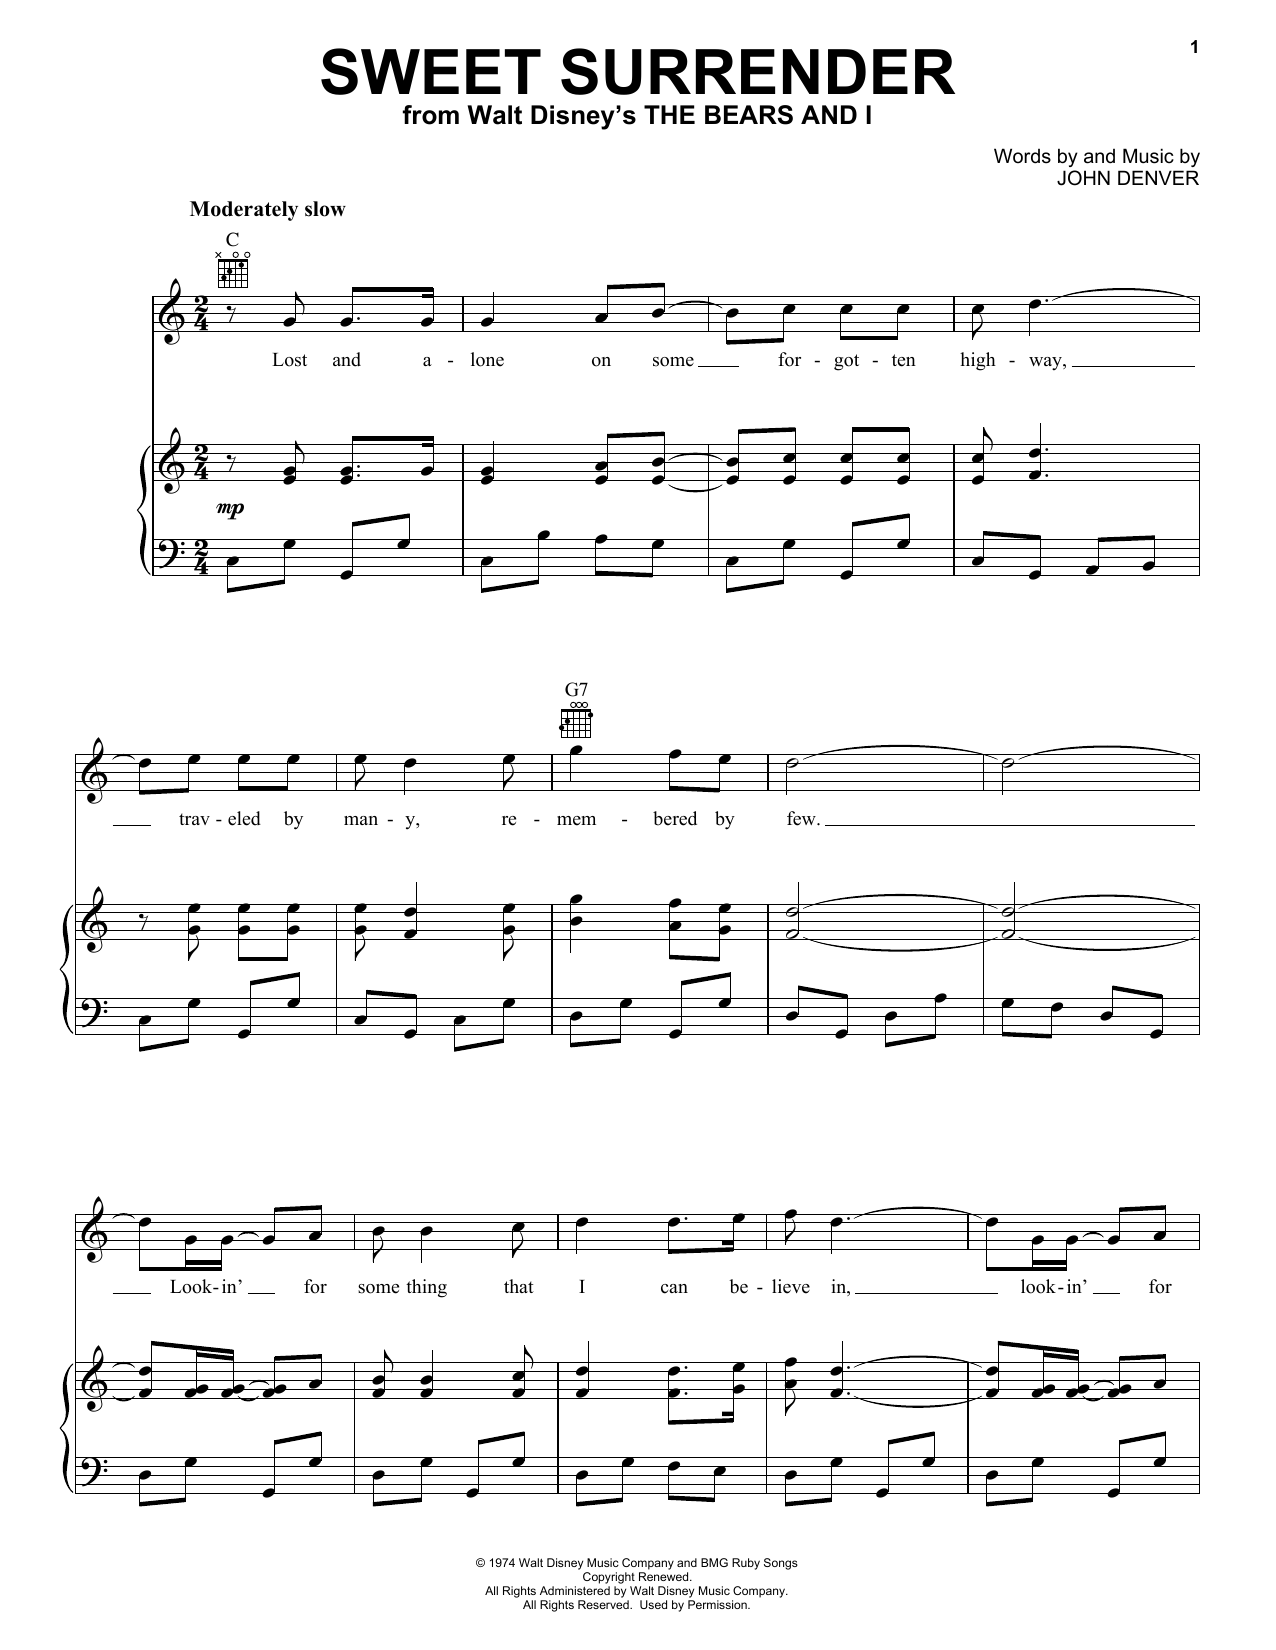 John Denver Sweet Surrender Sheet Music Notes & Chords for French Horn - Download or Print PDF